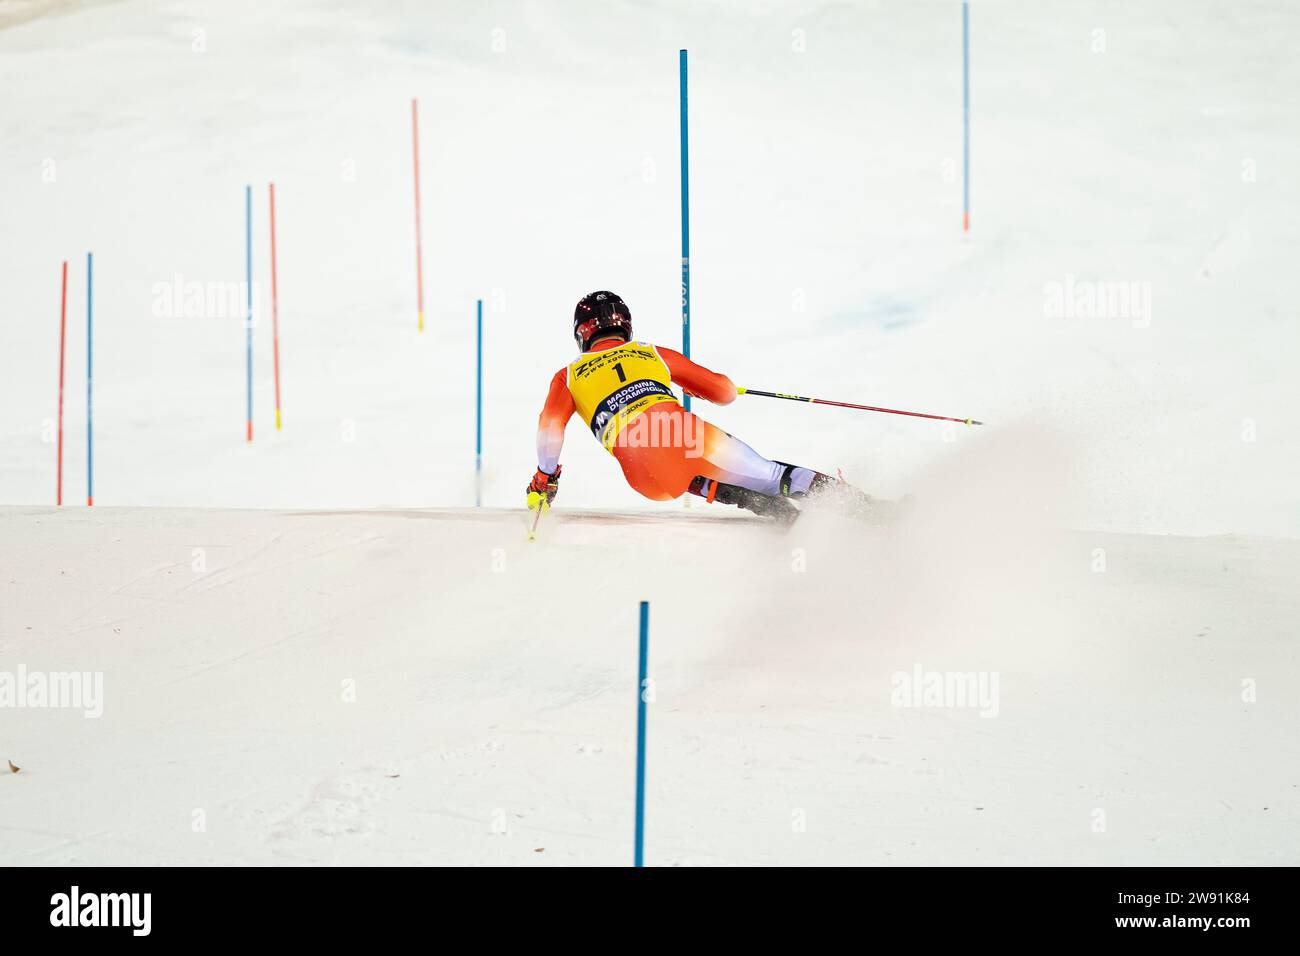 Madonna di Campiglio, Trento, 22 dicembre 2023: MEILLARD Loic (sui) gareggia nella Audi Fis Alpine Ski World Cup 2023-24 Men's Slalom Race sulla 3Tre Slope Credit: MAURO DALLA POZZA/Alamy Live News Foto Stock